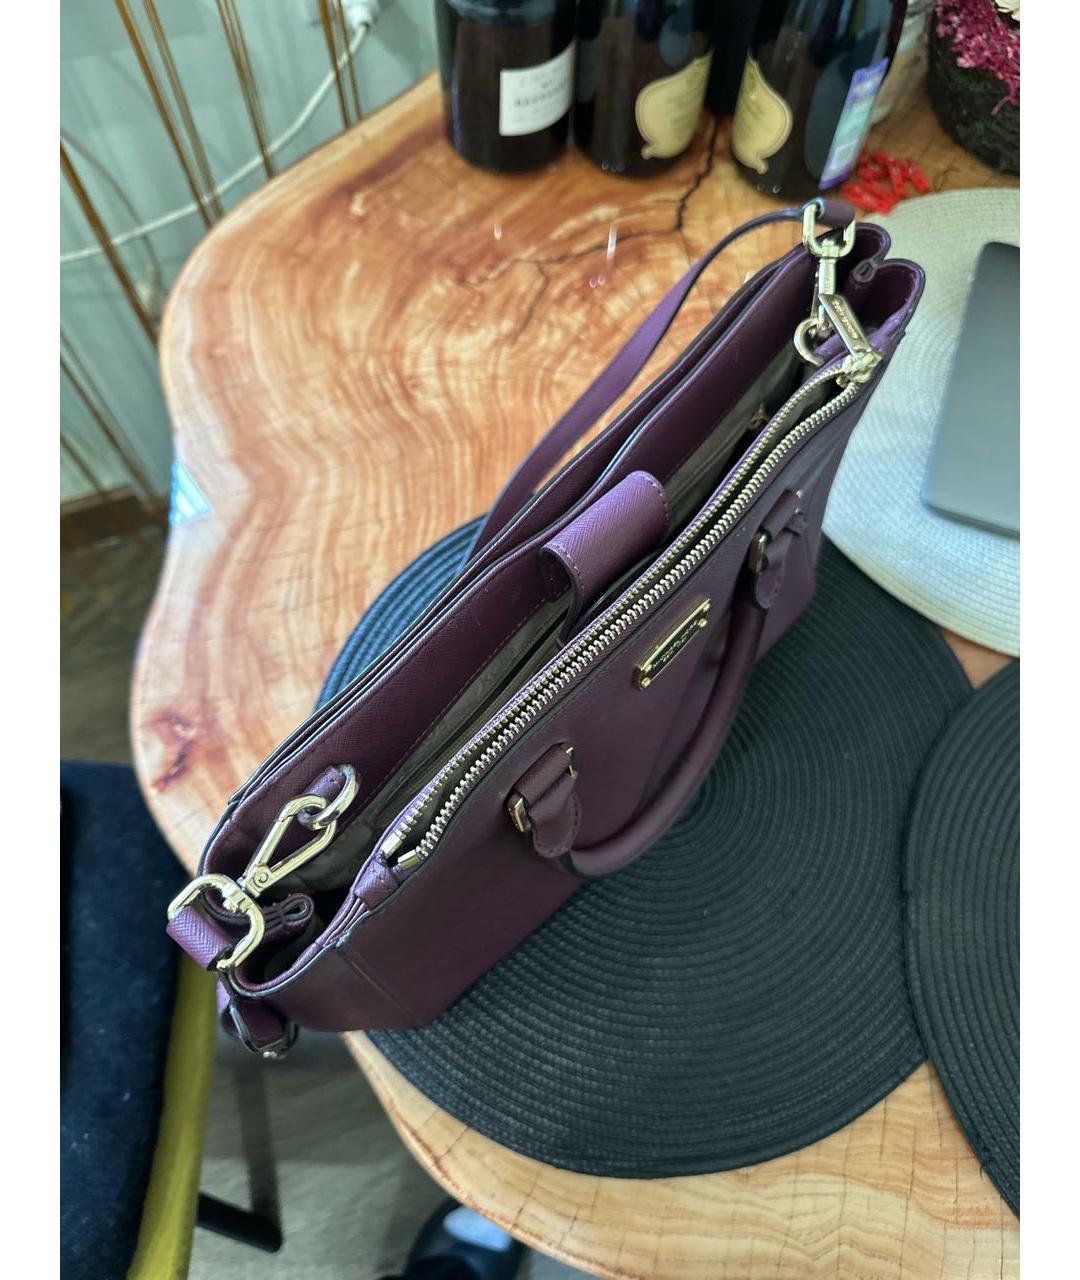 MICHAEL KORS Бордовая кожаная сумка с короткими ручками, фото 4